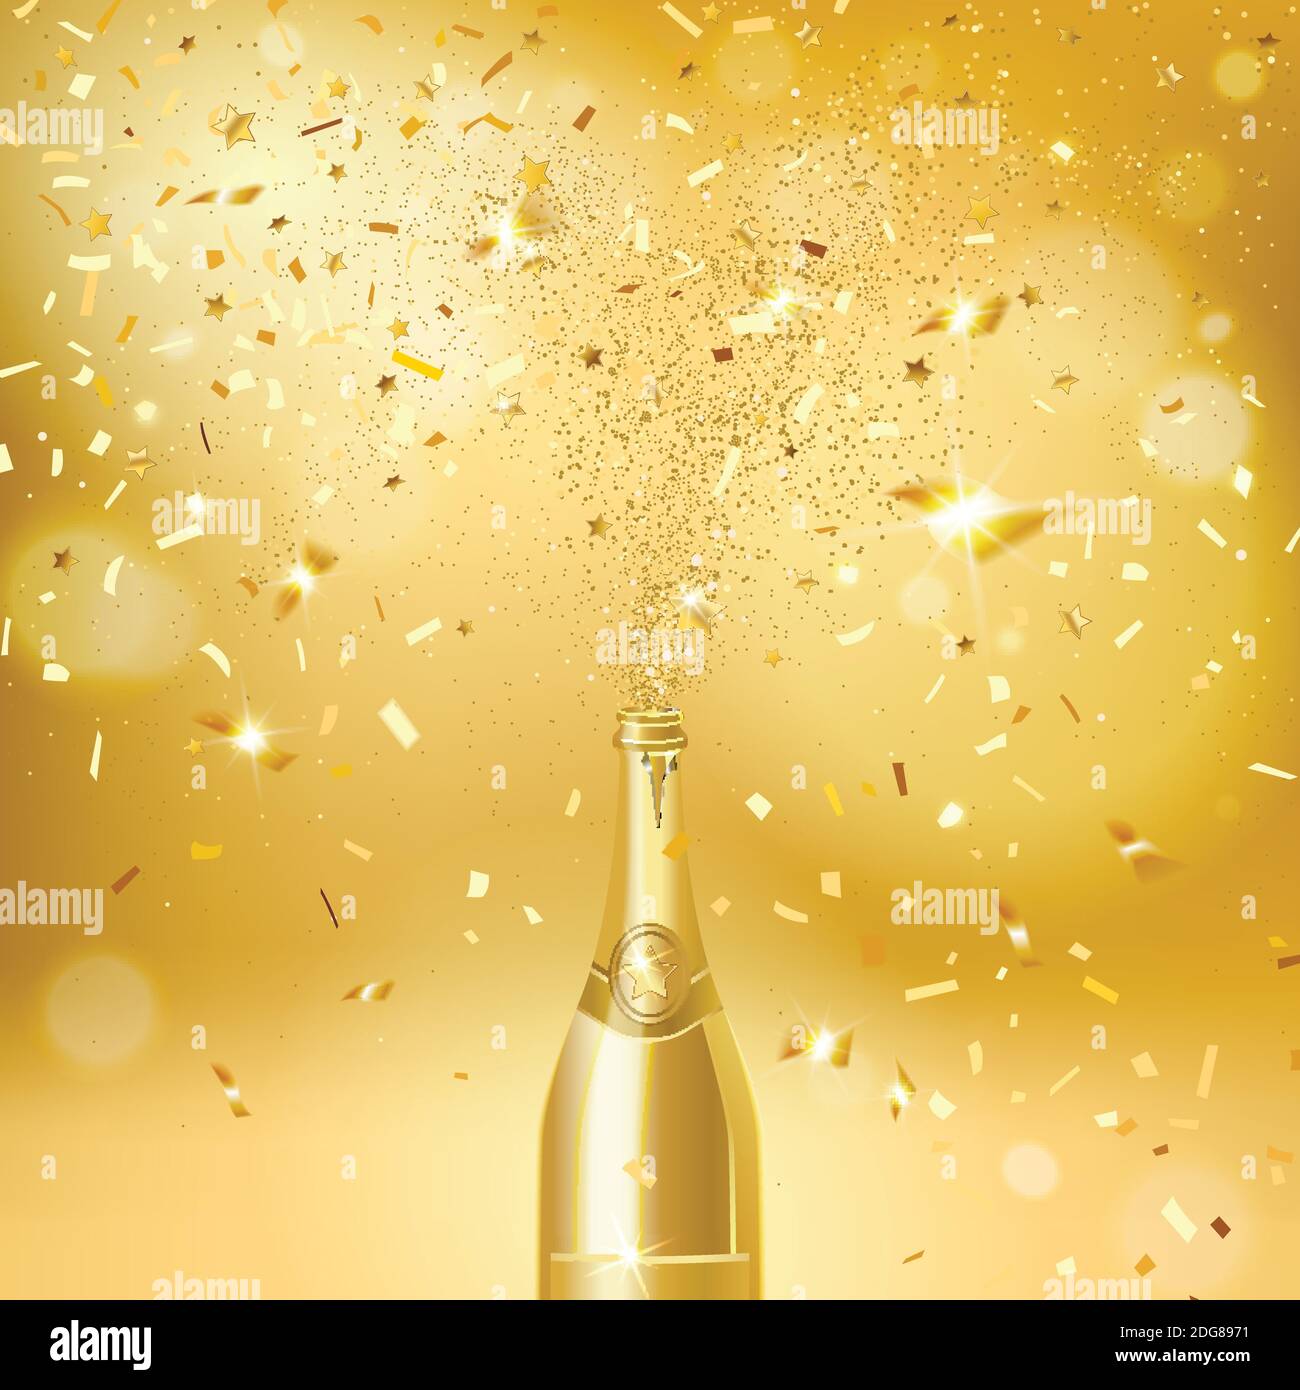 bottiglia di champagne su sfondo dorato con confetti d'oro Illustrazione Vettoriale